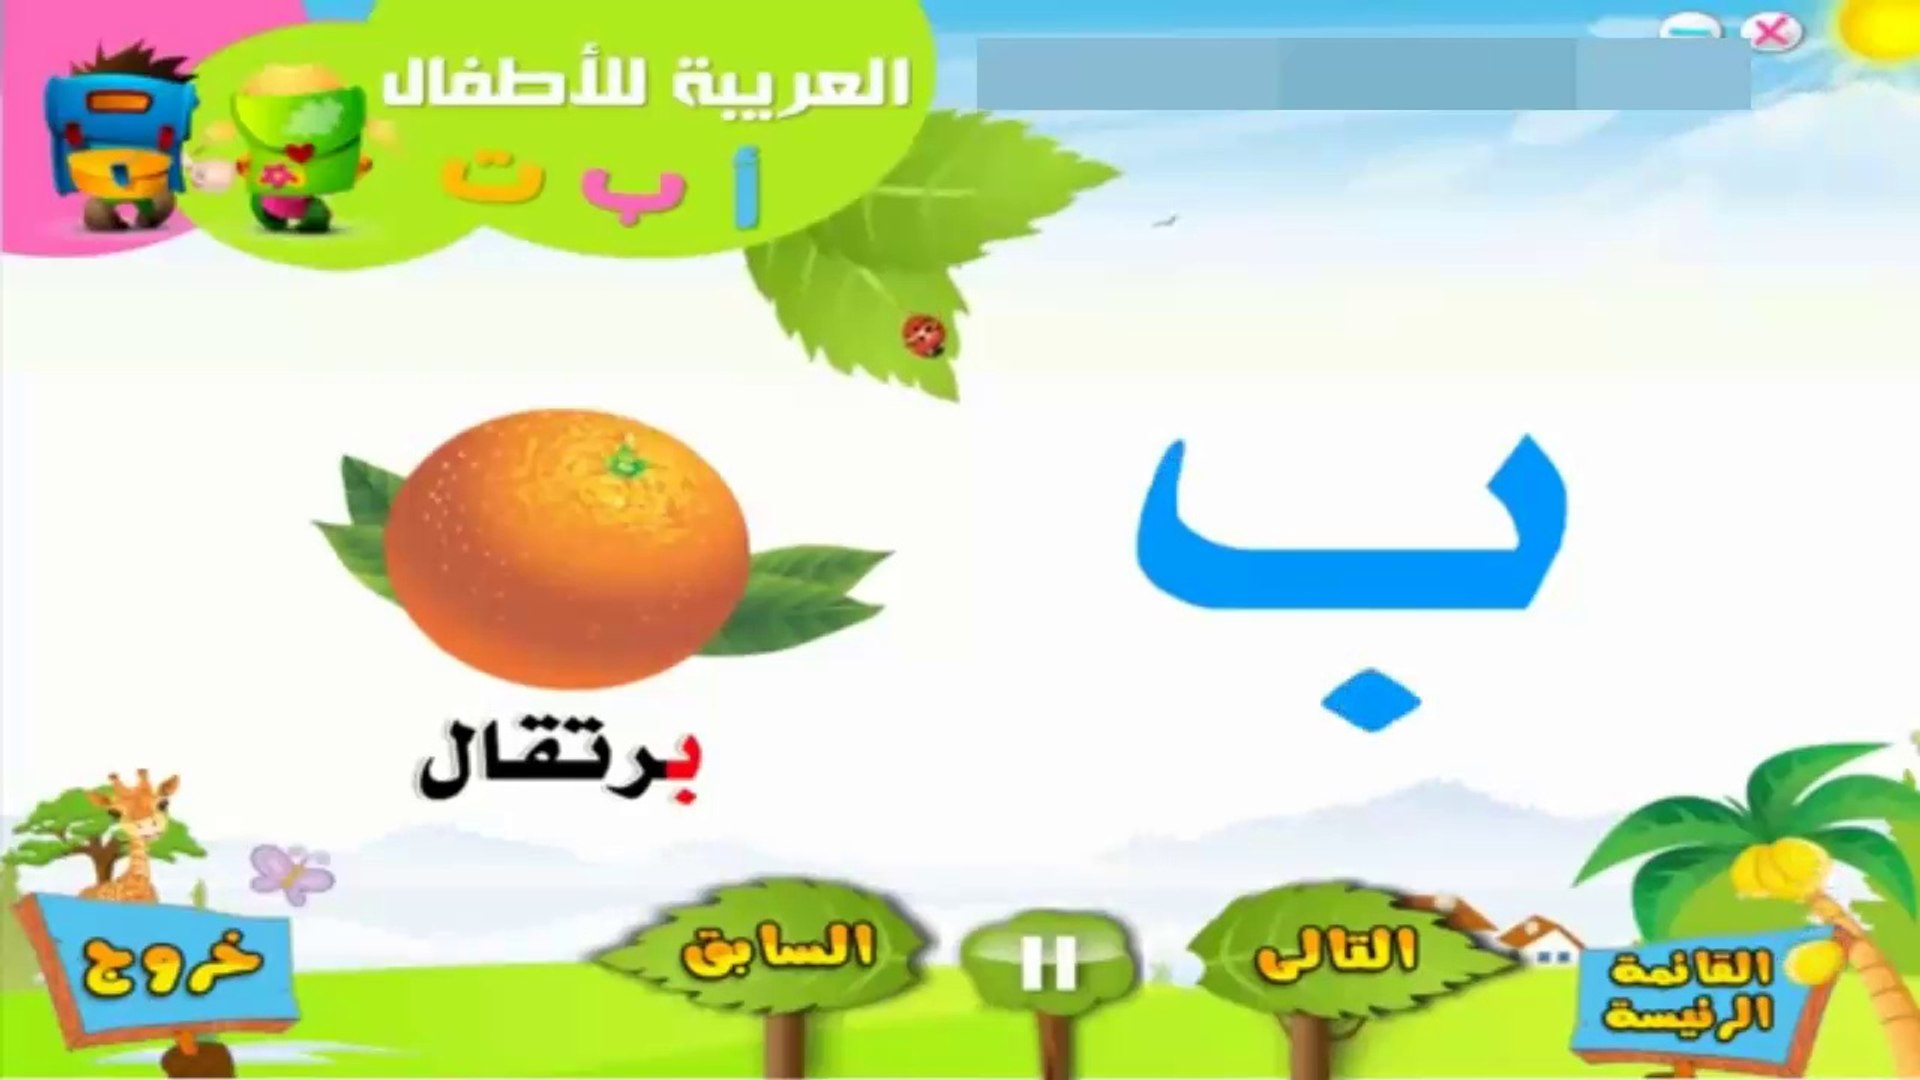 تعليم الاطفال العربية - تعليم الحروف - فيديو Dailymotion